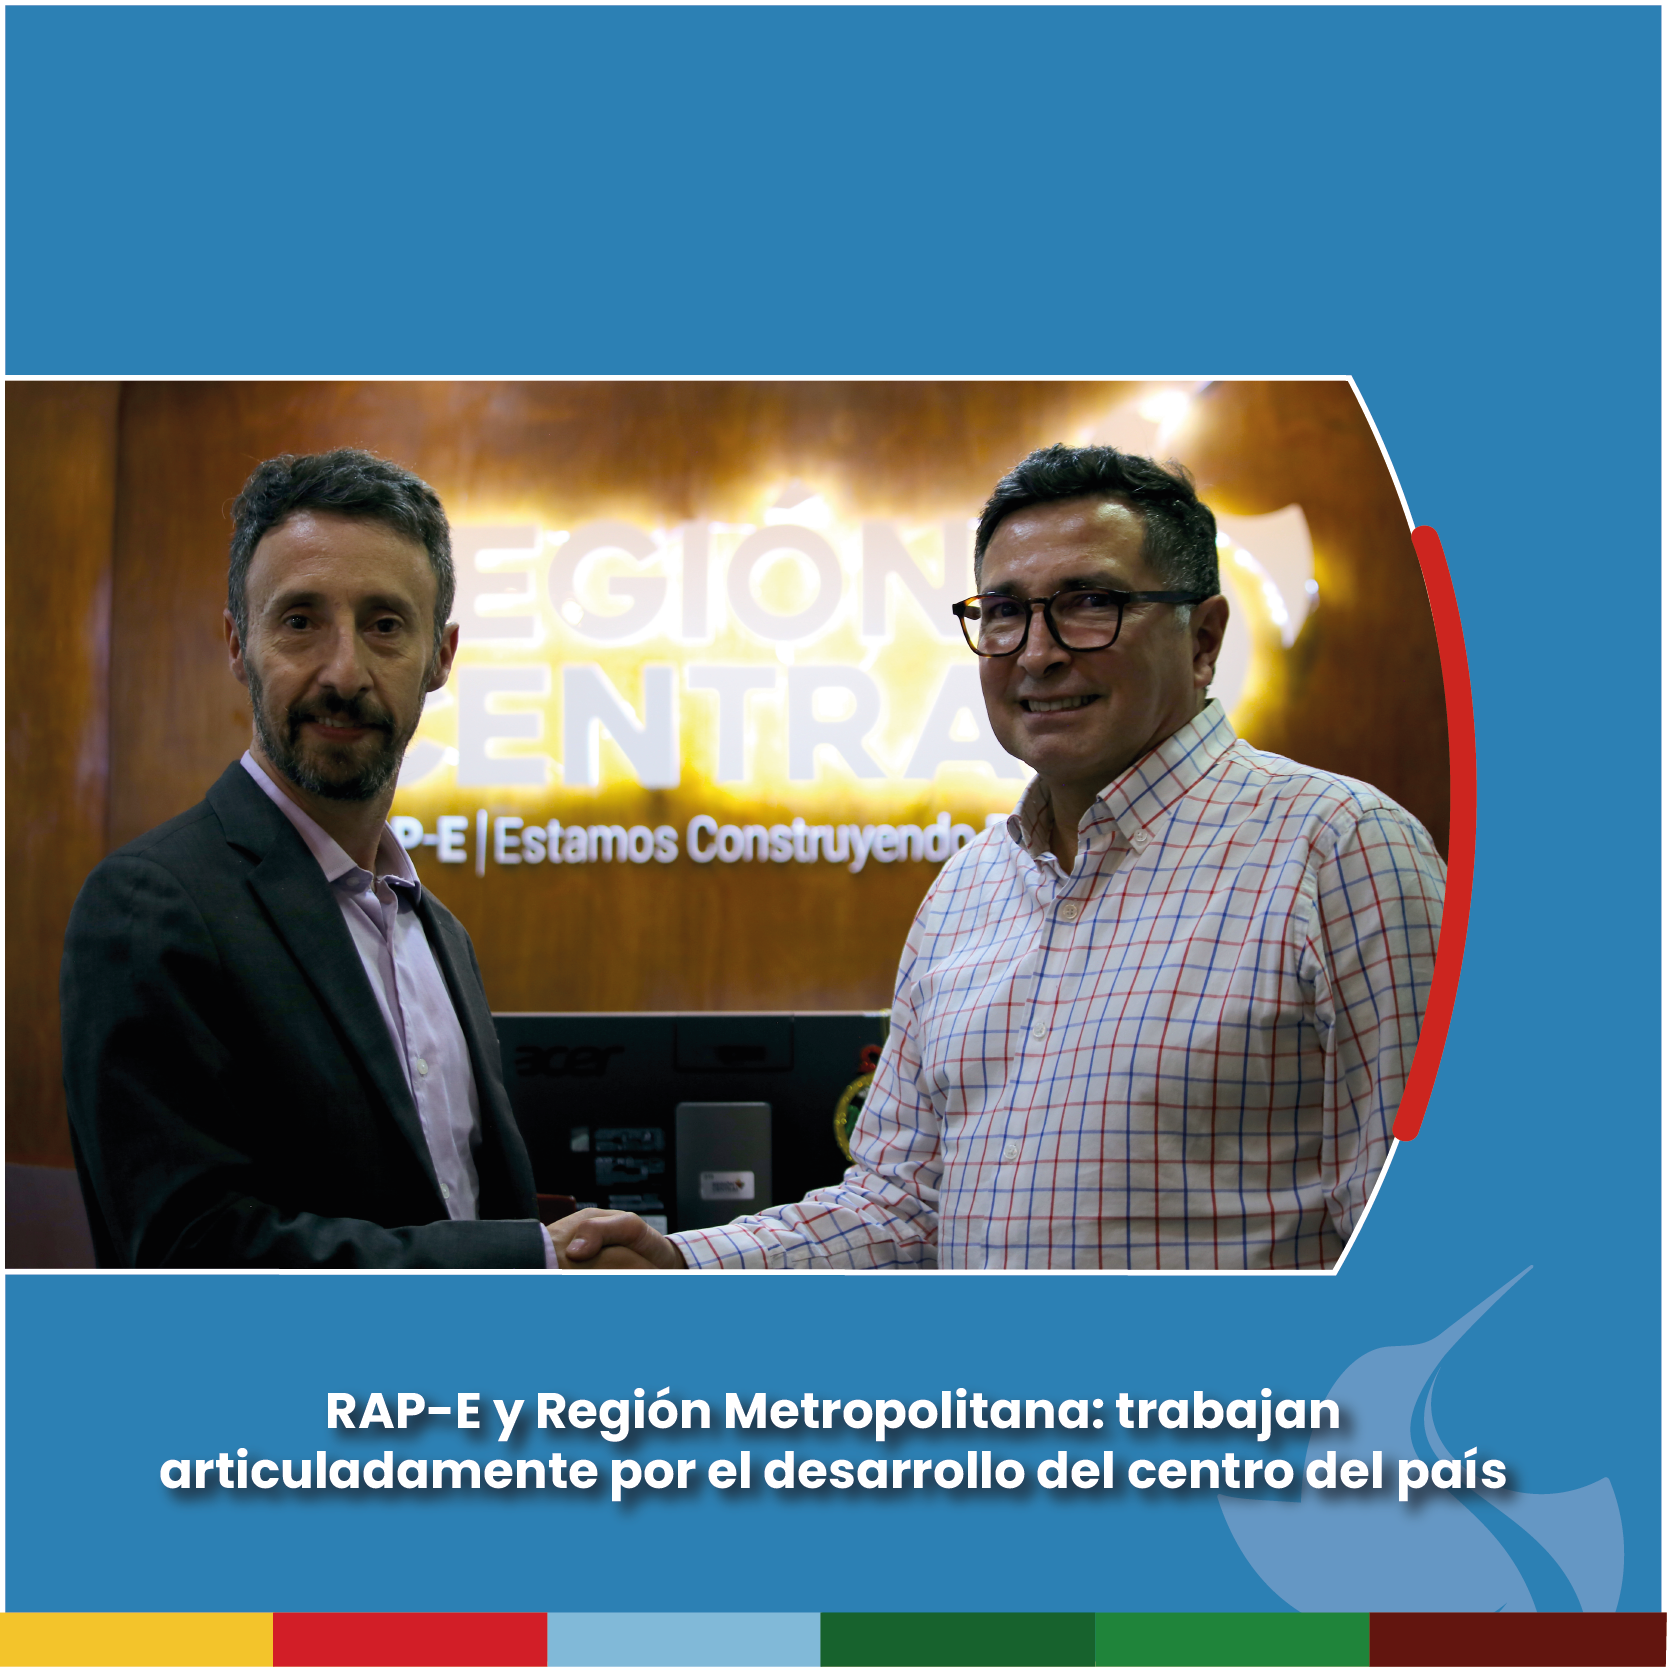 RAP-E y Región Metropolitana: trabajan articuladamente por el desarrollo del centro del país